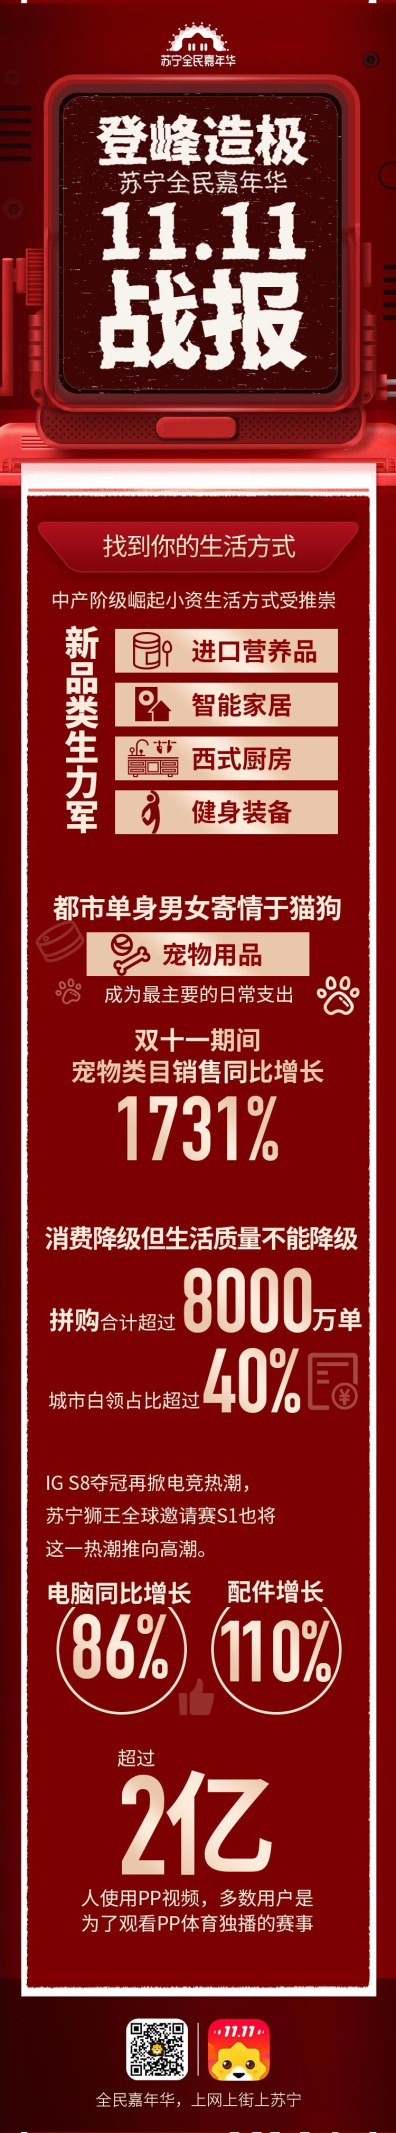 【双11战报】苏宁易购双十一战报：全渠道销售同比增长132%